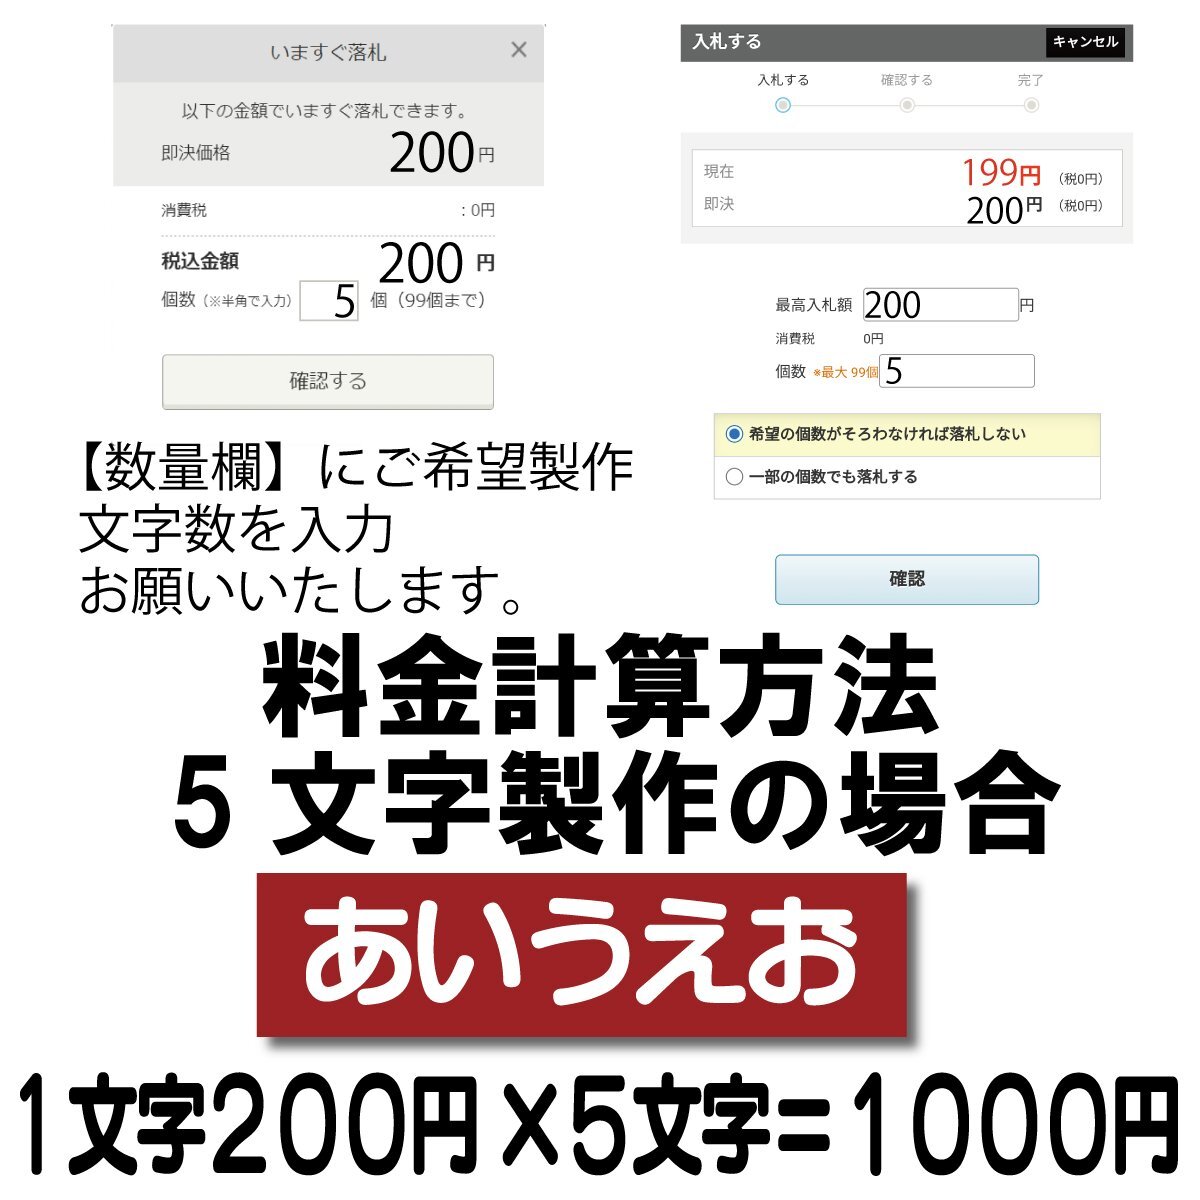 Если количество символов составляет 5 символов, это будет 750 иен.